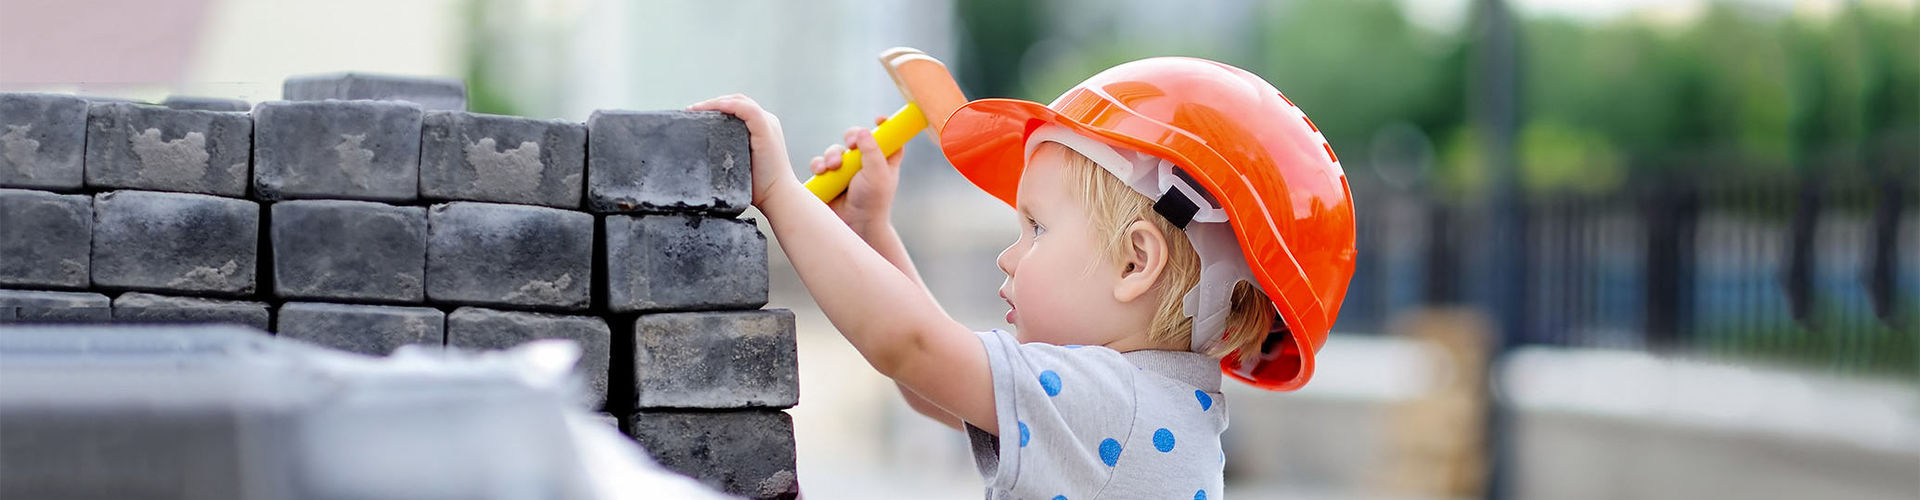 Ein Kind mit Helm auf einer Baustelle als Symbol für guten Schutz.